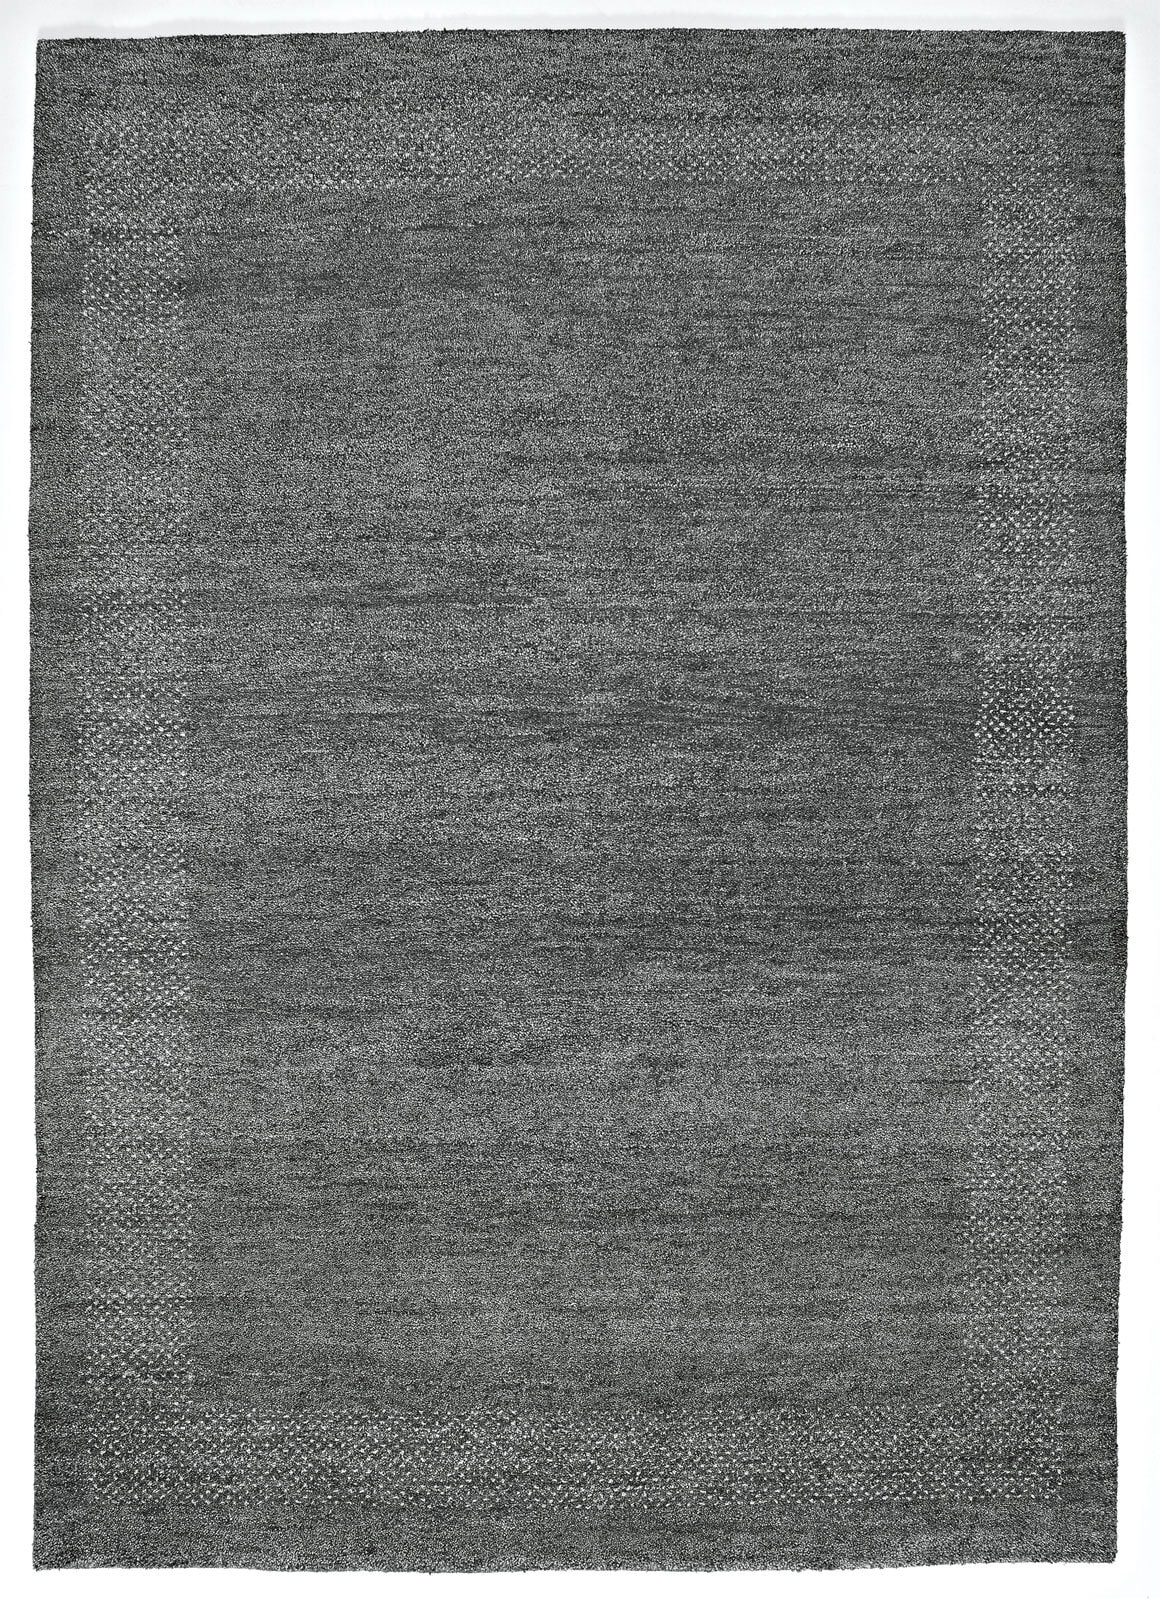 Gabbeh-Teppich CASABLANCA 40 x 60 cm grau/schwarz